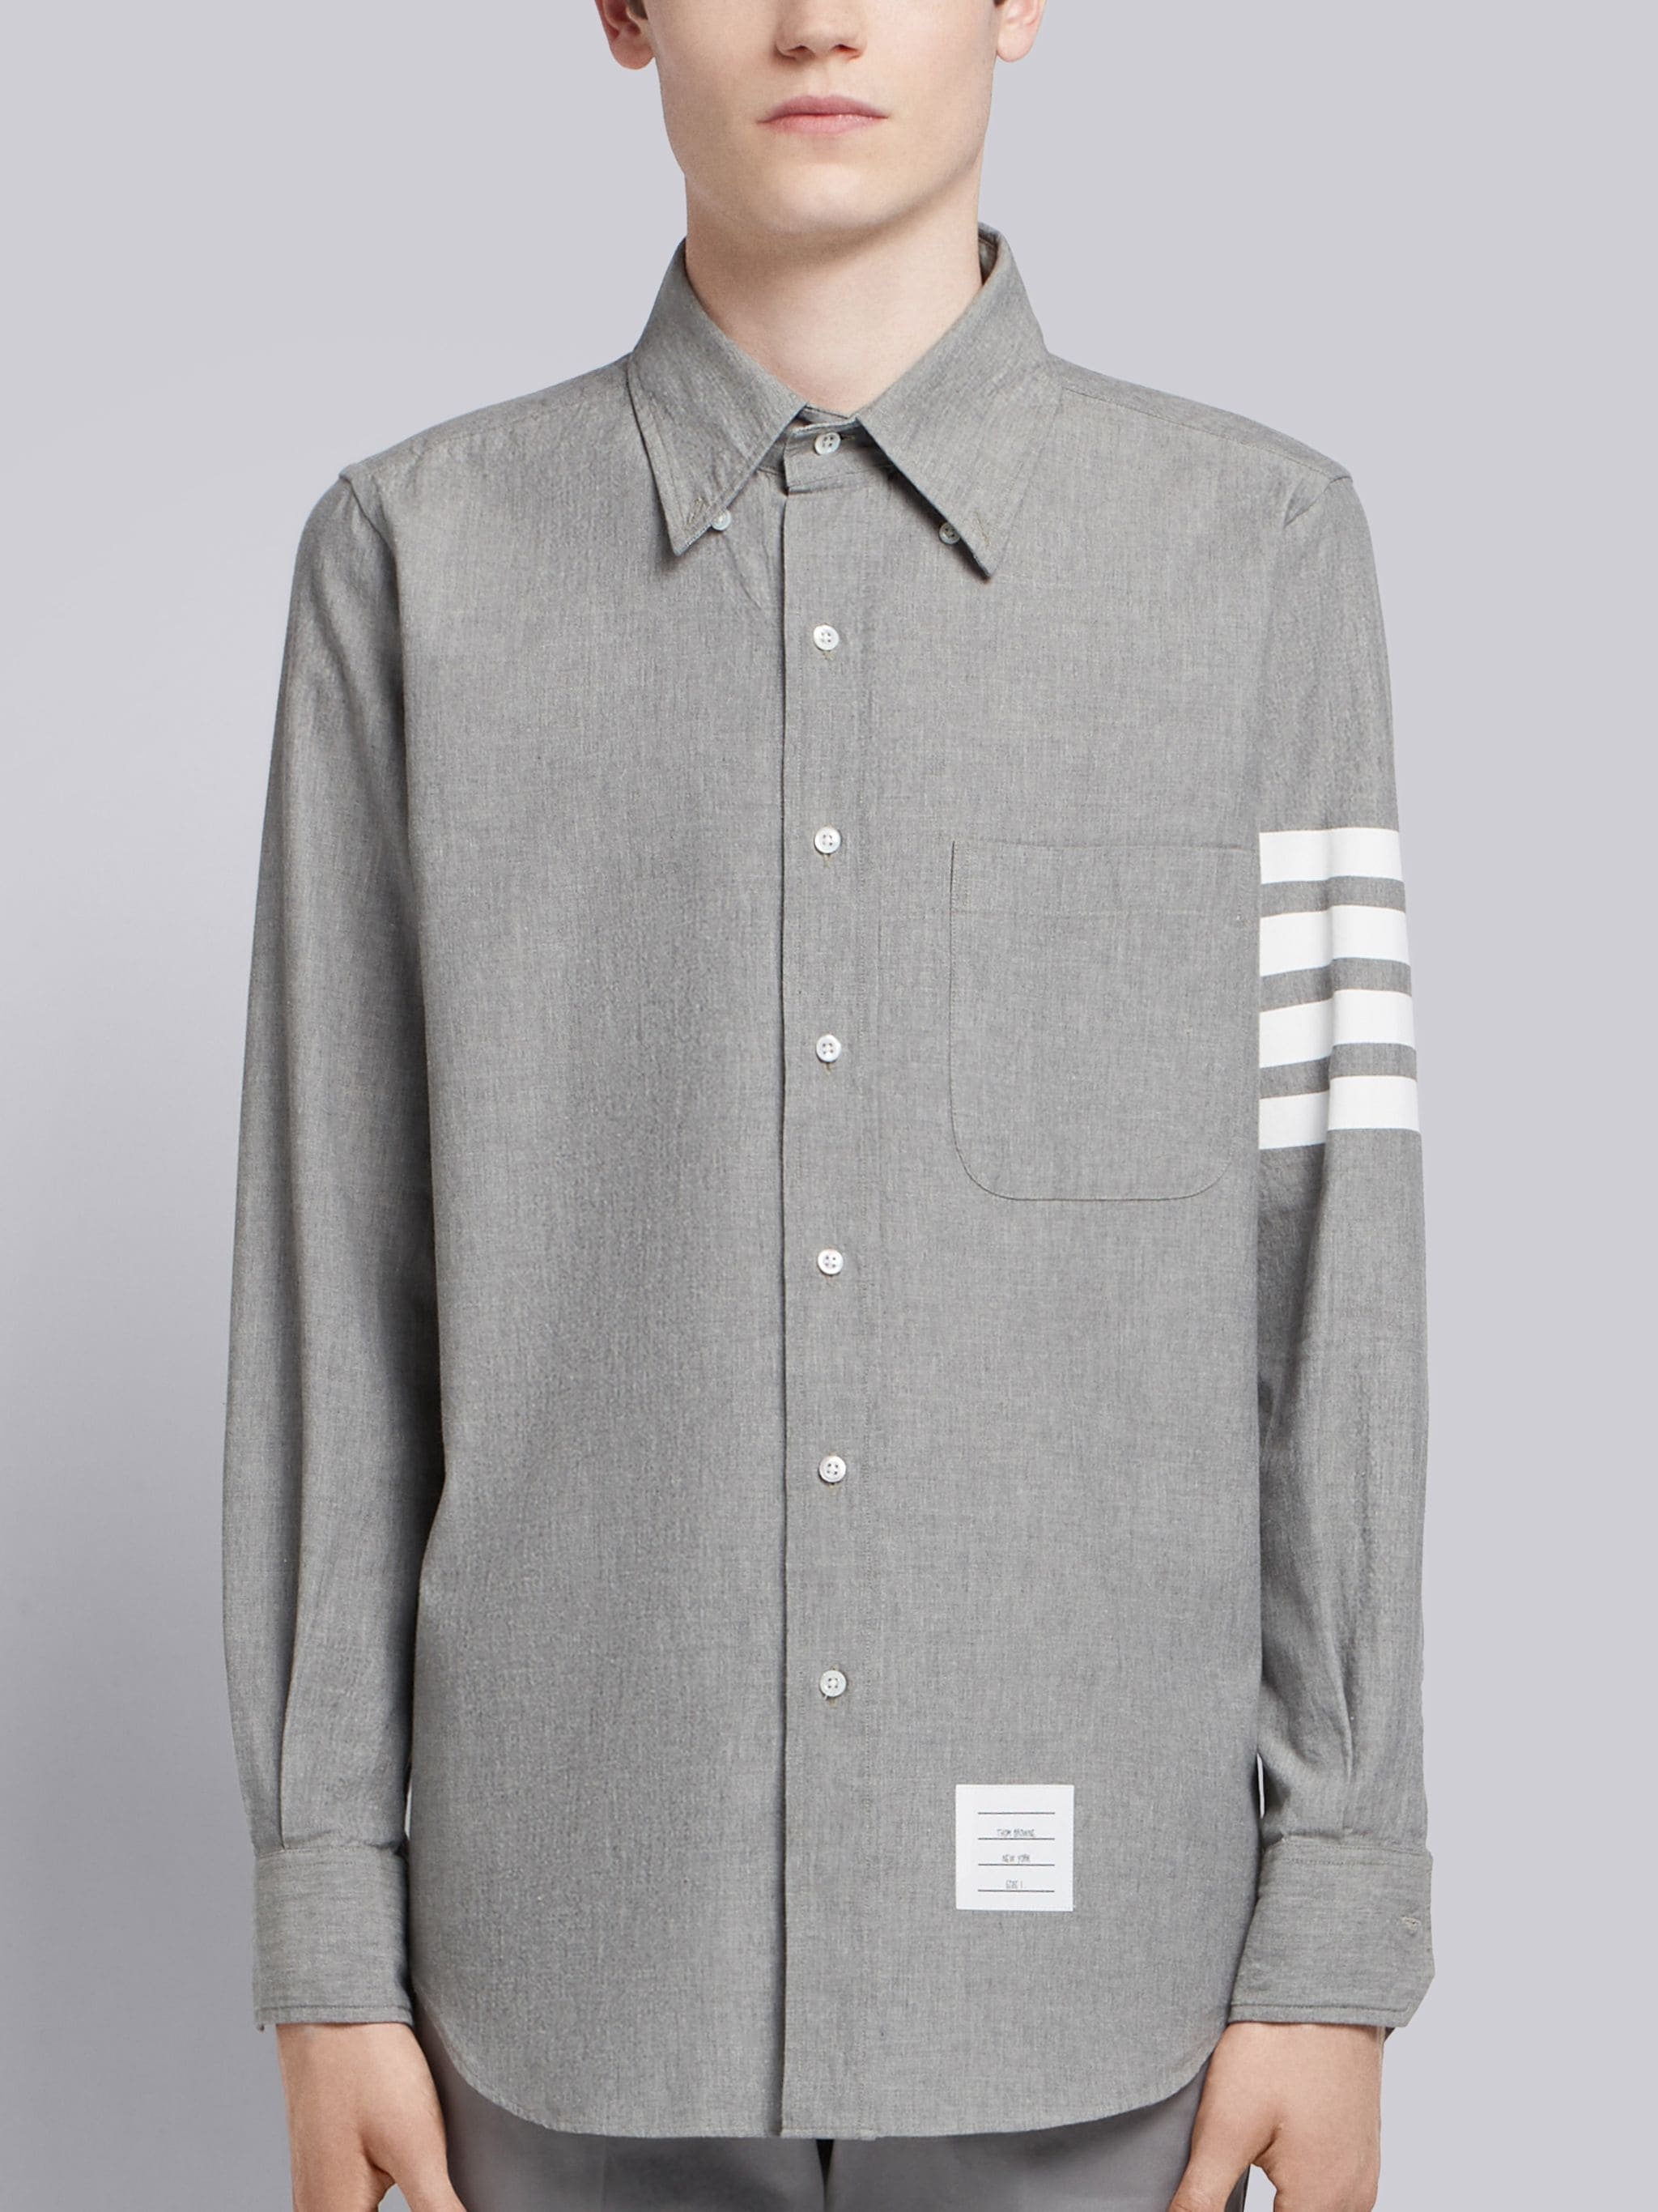 Medium Grey Chambray Printed 4-bar Nametag Straight Fit Shirt - 2